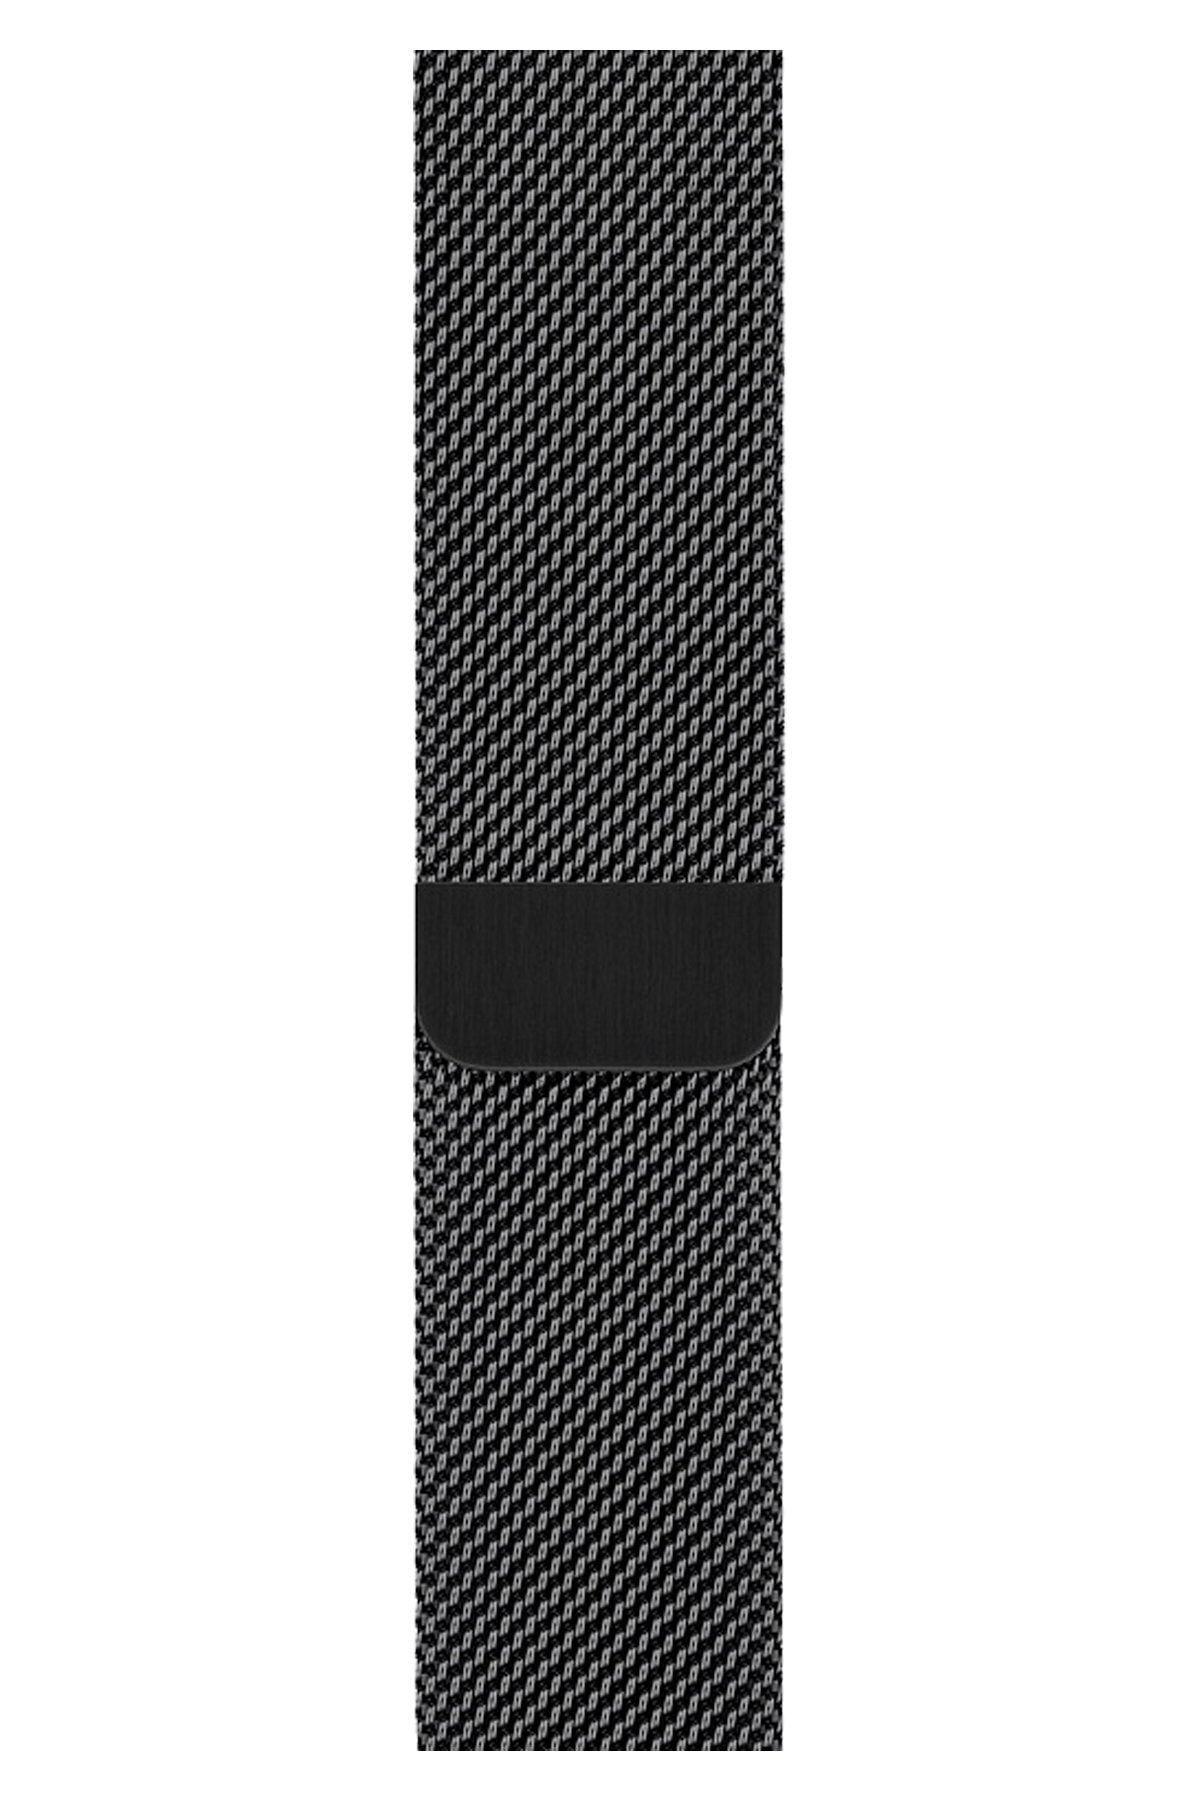 Qfit Apple Watch Uyumlu Çelik Kordon Milano Loop Siyah 42/44 mm